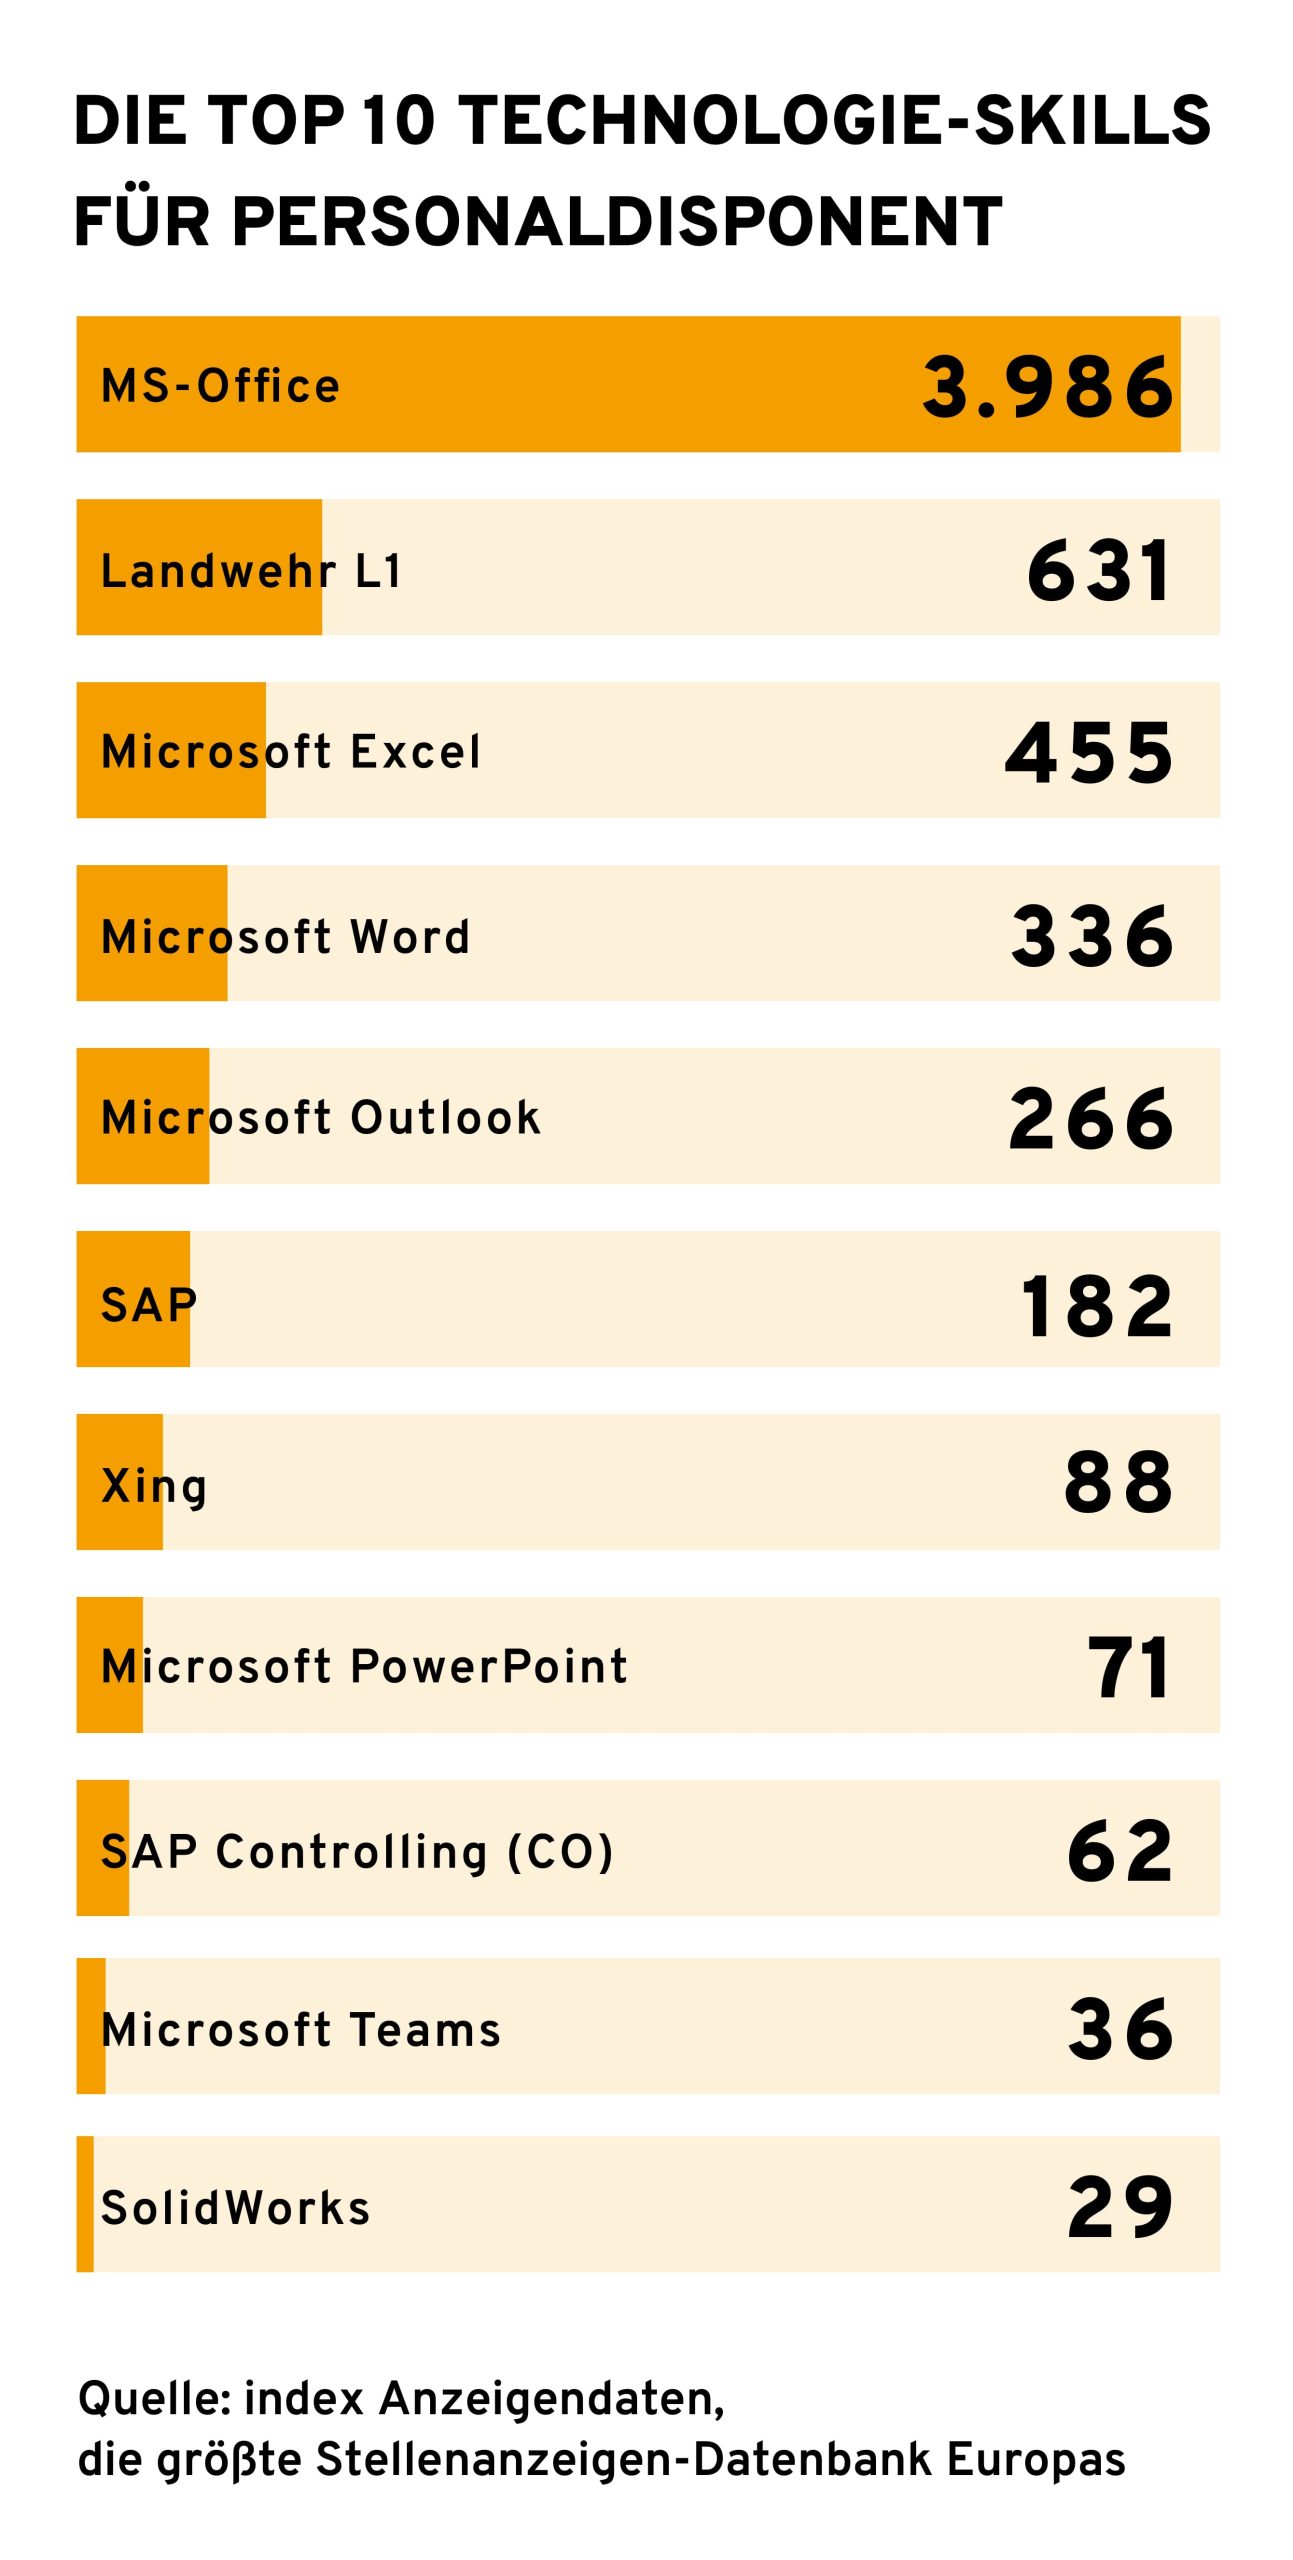 Eine Infografik mit dem Titel "Die Top 10 Technologie-Skills für Personaldisponent". Sie zeigt ein Balkendiagramm, das von "MS-Office" mit 3.986 Nennungen angeführt wird, gefolgt von "Landwehr L1" mit 631, "Microsoft Excel" mit 455, "Microsoft Word" mit 336, "Microsoft Outlook" mit 266, "SAP" mit 182, "Xing" mit 88, "Microsoft PowerPoint" mit 71, "SAP Controlling (CO)" mit 62 und "Microsoft Teams" mit 36. Am unteren Rand wird "SolidWorks" mit 29 Nennungen gezeigt. Quellenangabe: "index Anzeigendaten, die größte Stellenanzeigen-Datenbank Europas".